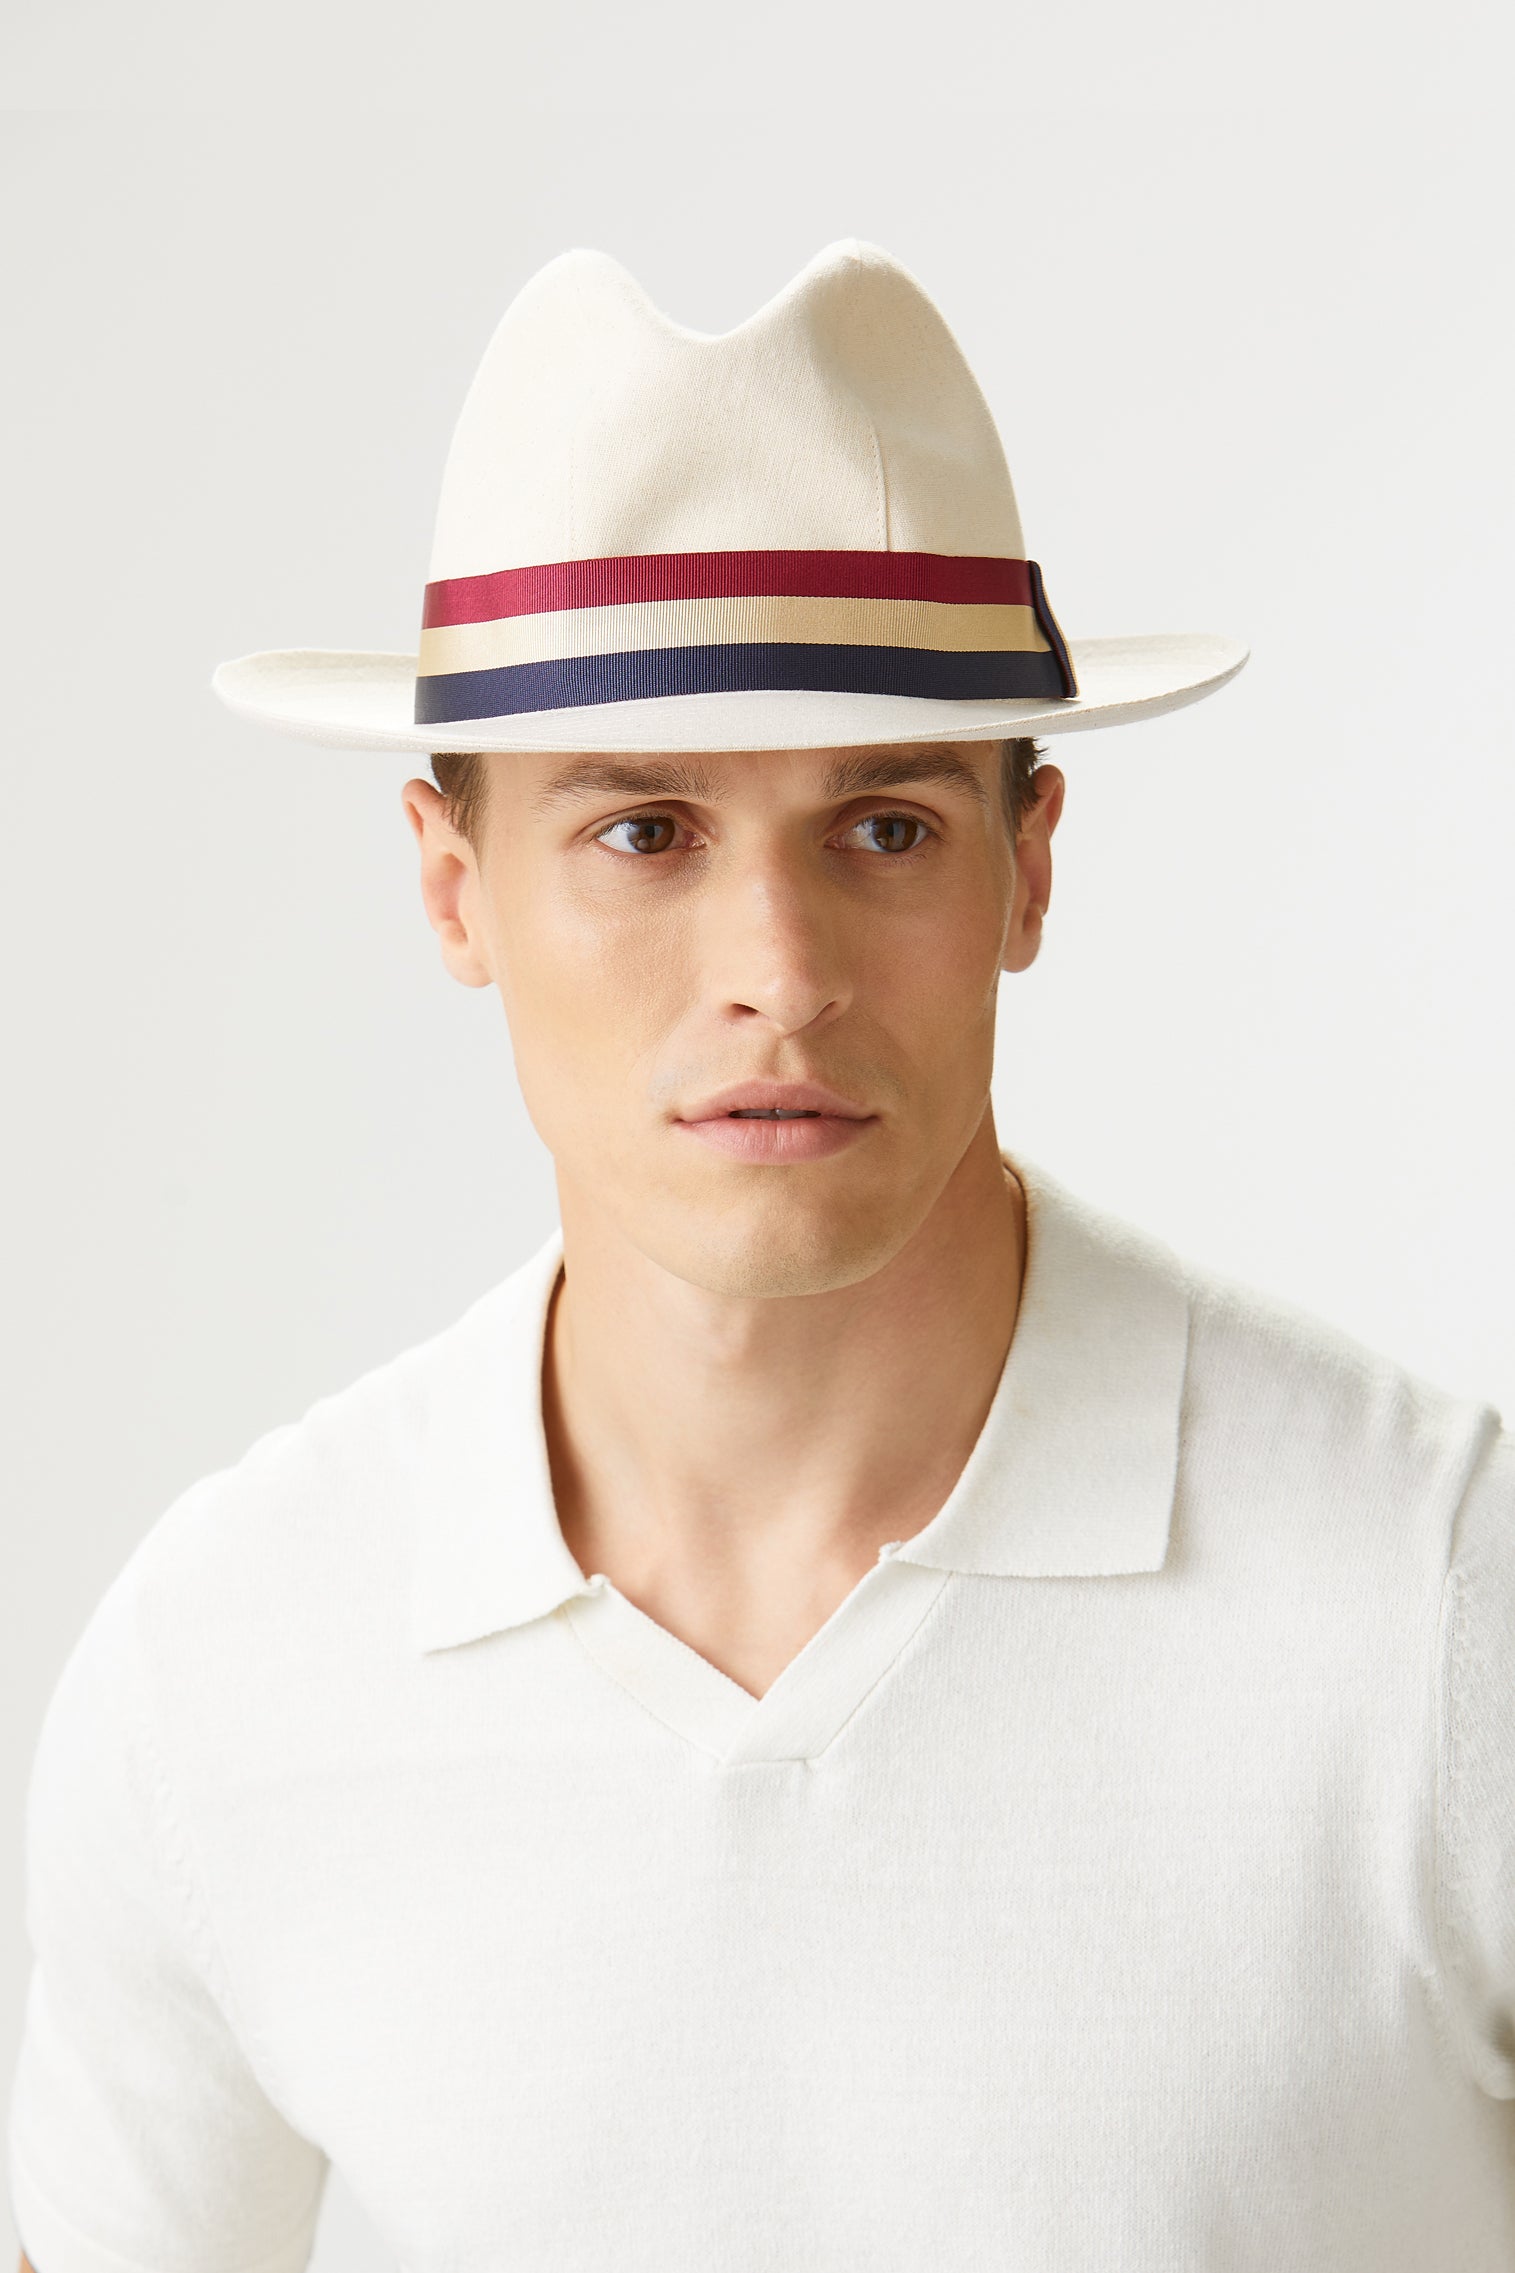 Ottawa Sheepskin Hat - Lock & Co. Hats for Men & Women